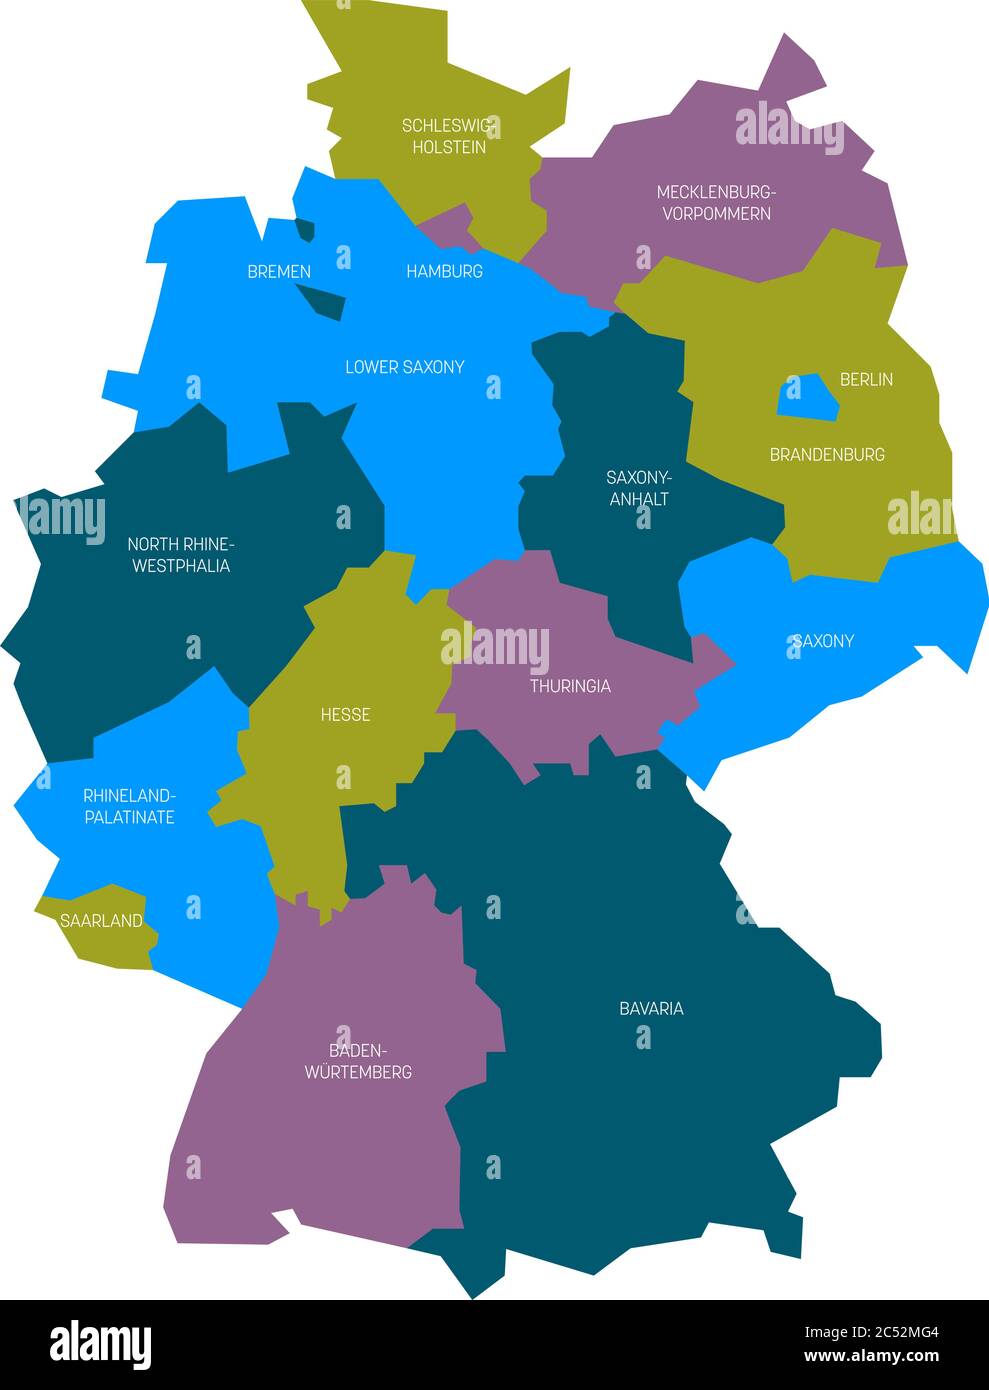 Karte von Deutschland aufgeteilt in 13 Bundesländer und 3 Stadtstaaten - Berlin, Bremen und Hamburg, Europa. Einfache flache Vektorkarte in vier Farben mit weißen Etiketten. Stock Vektor